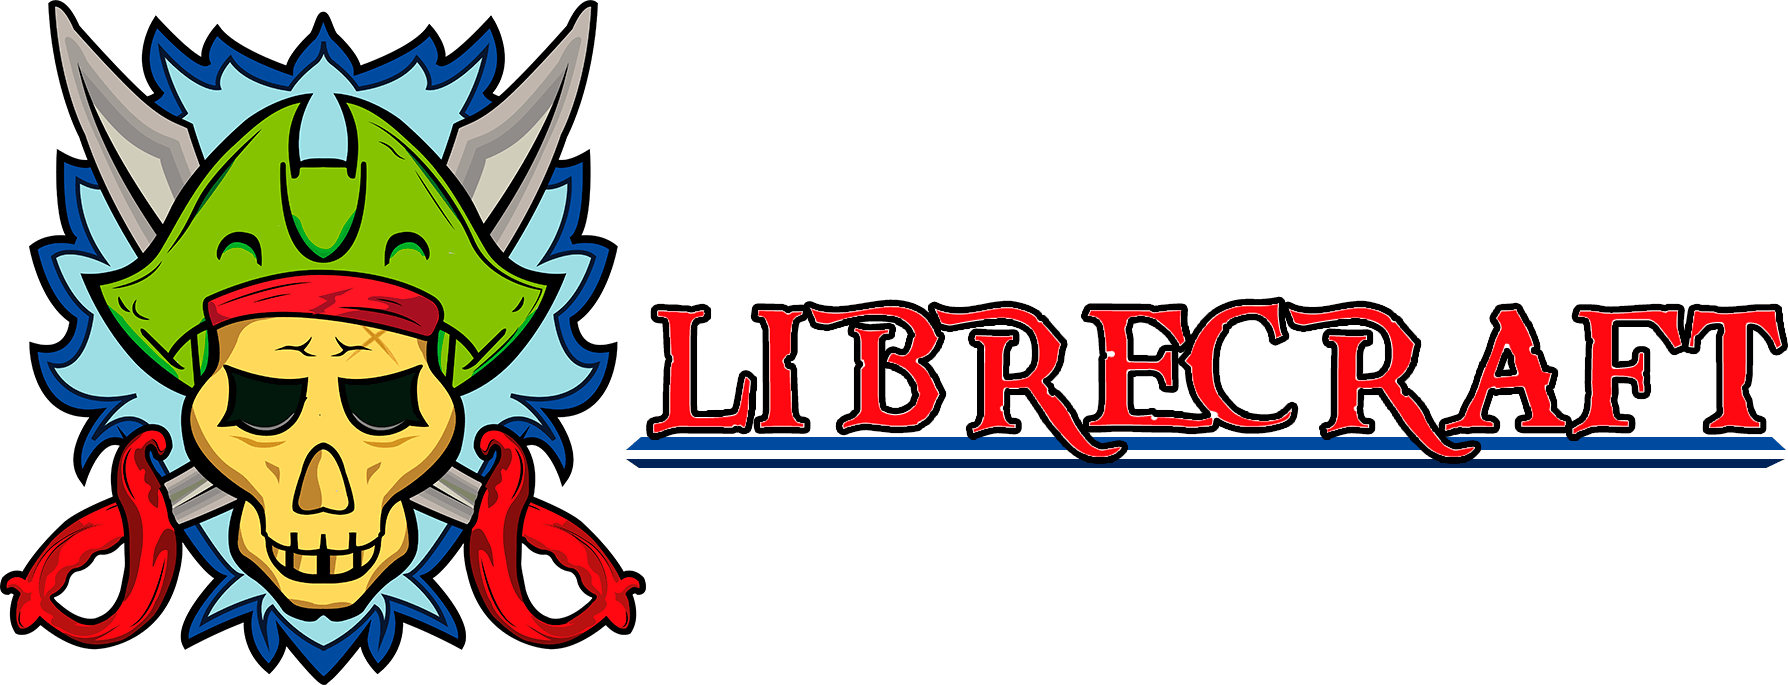 LibreCraft logo